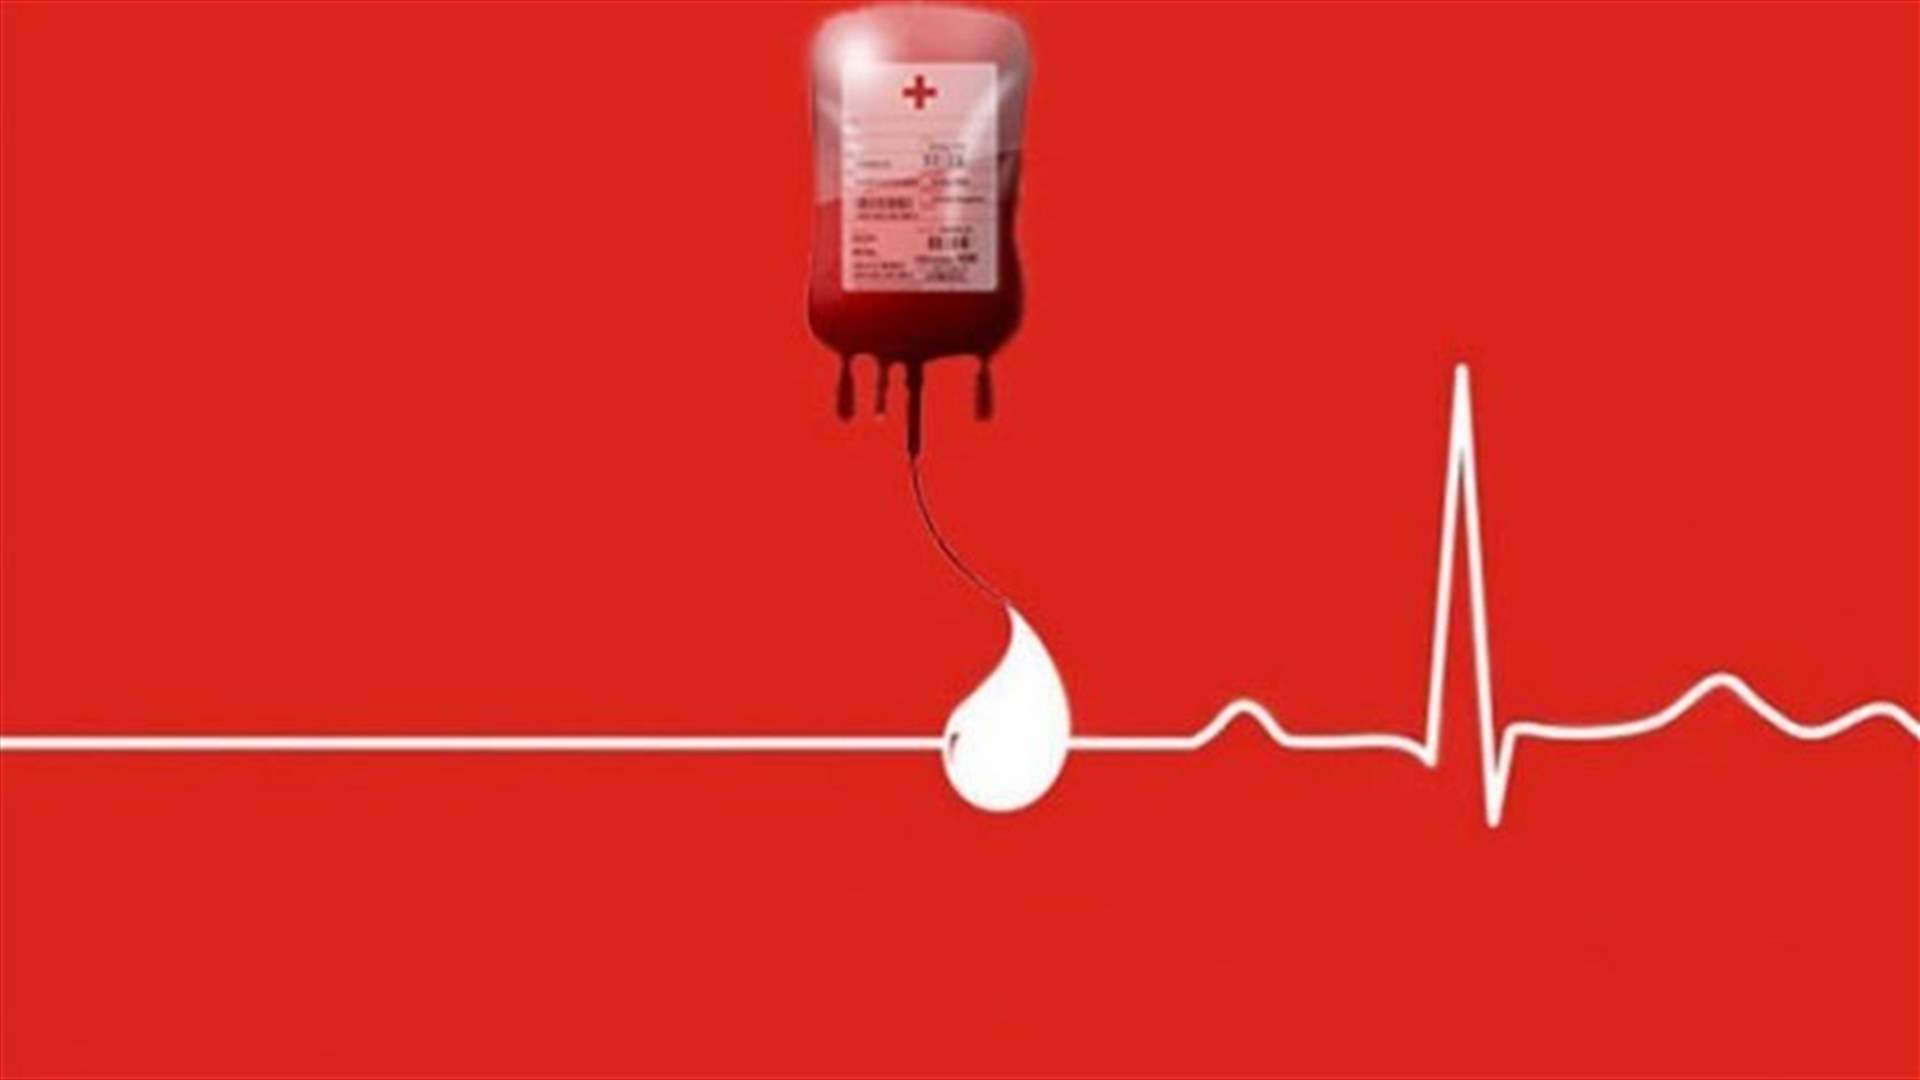 مريض بحاجة ماسة الى ٦ وحدات دم من فئة O+ في مستشفى أوتيل ديو... للتبرع الرجاء الإتصال على الرقم التالي: 78937802